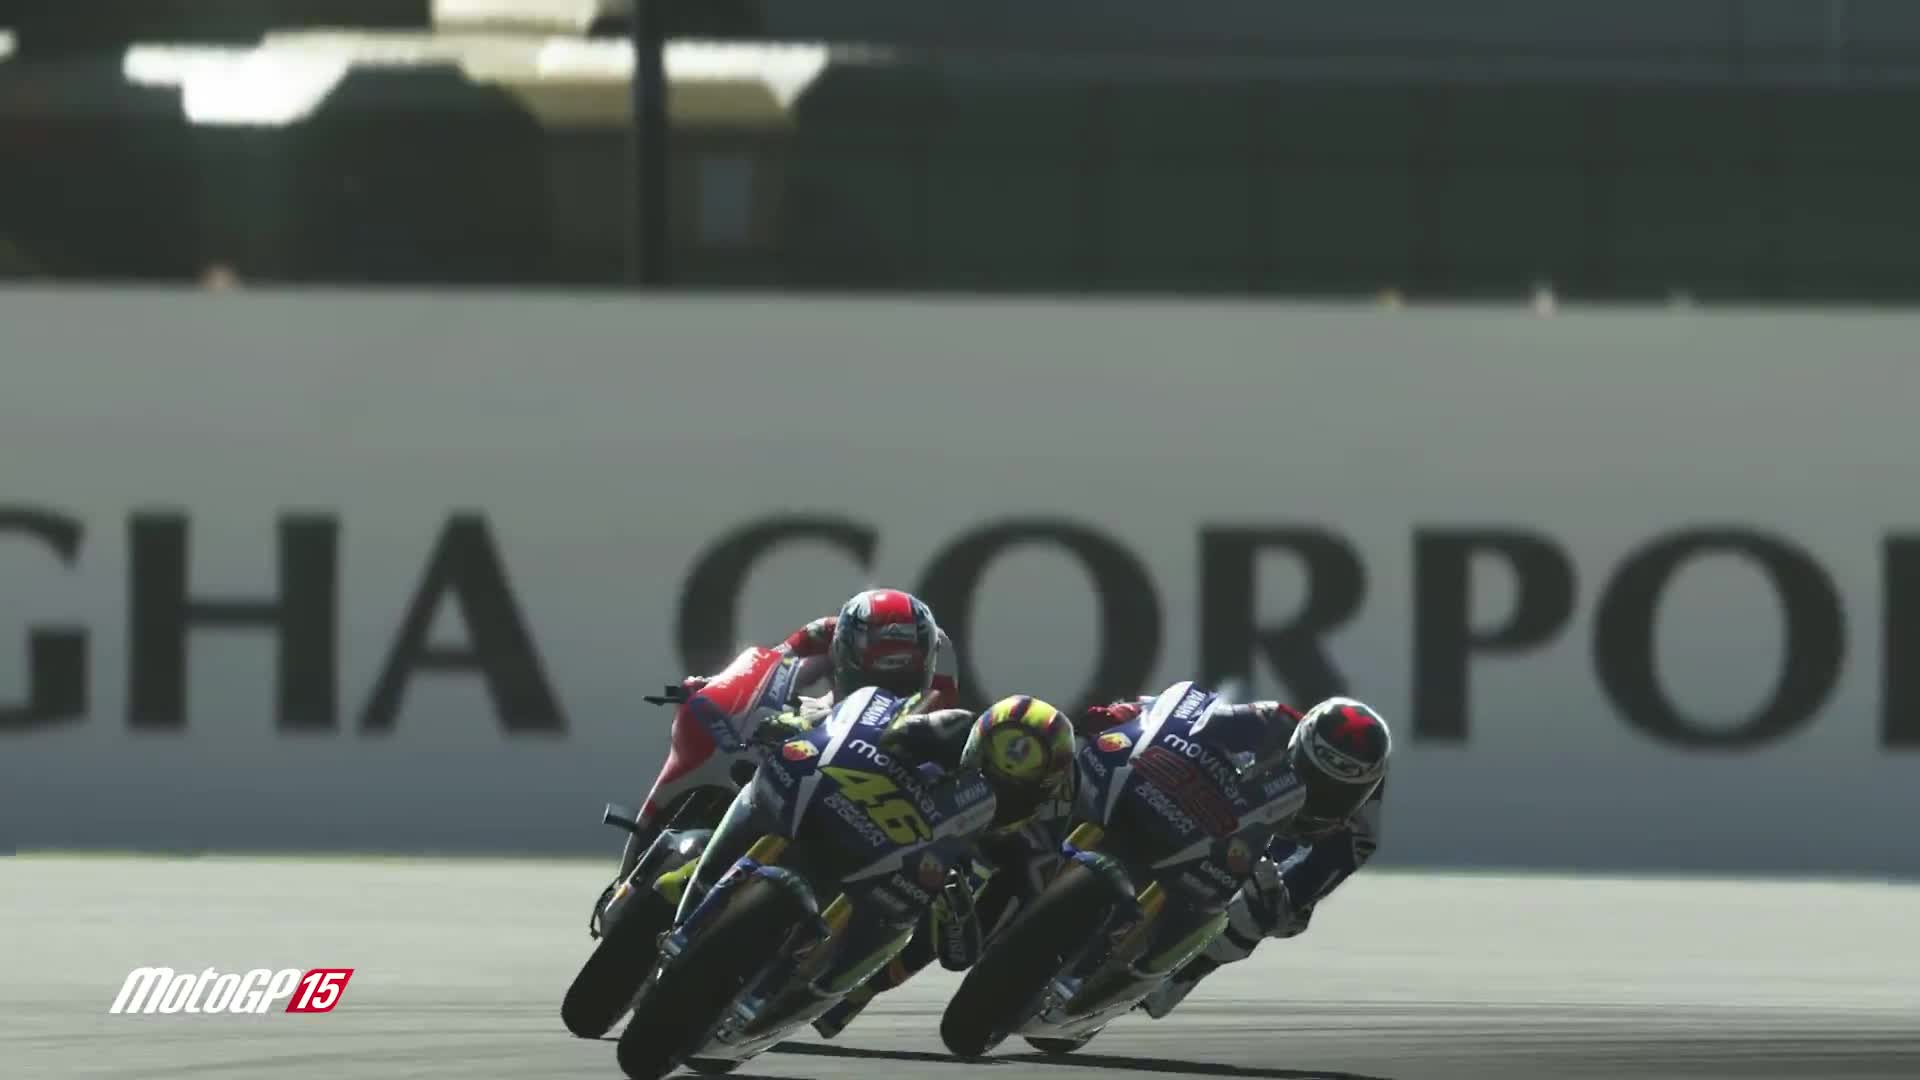 MotoGP 15 - Launch trailer